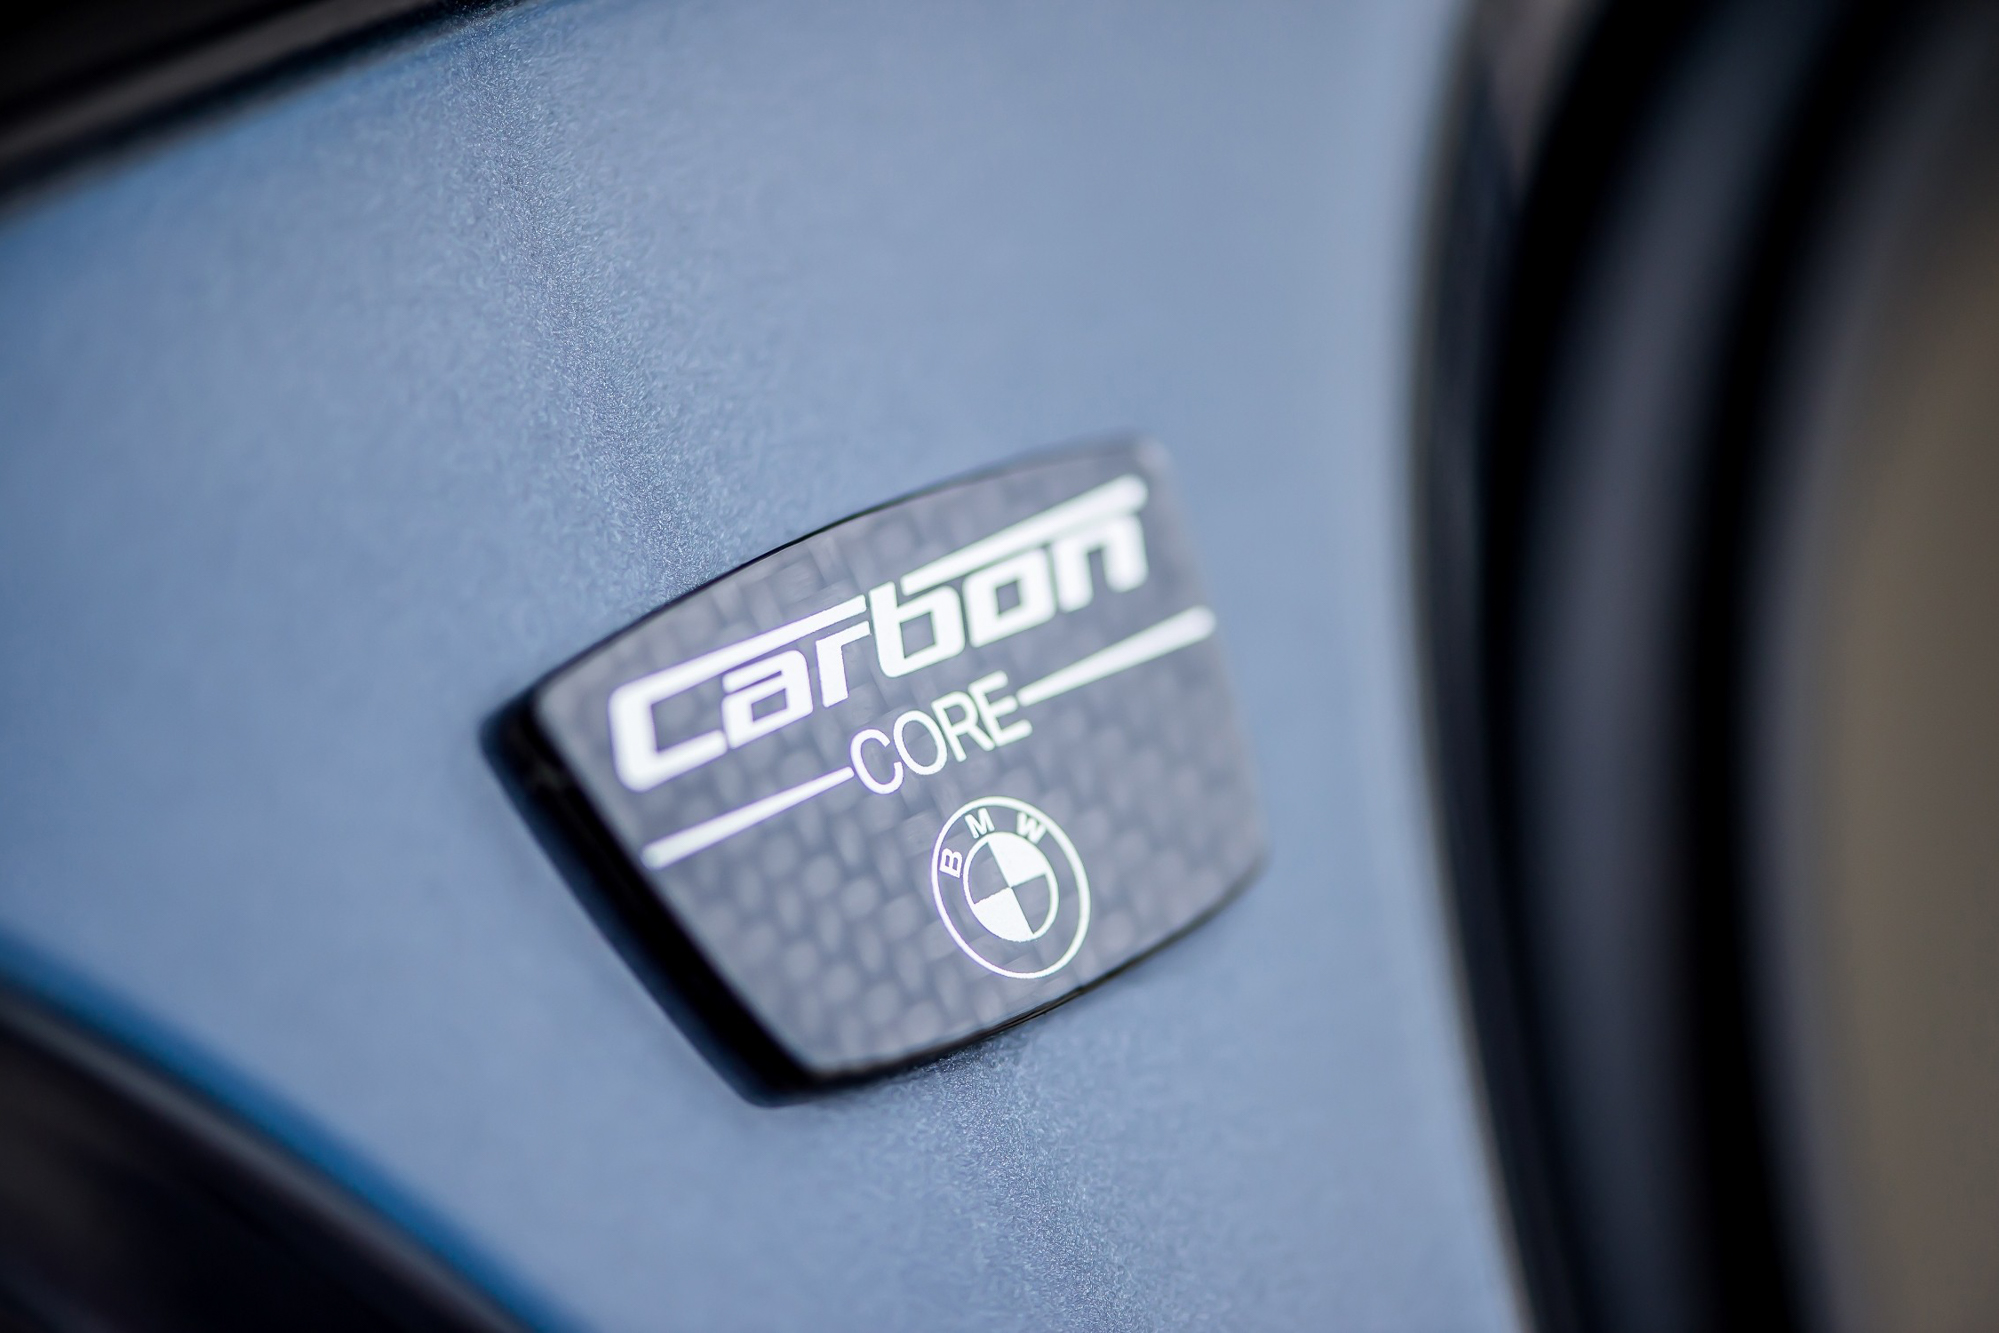 傲視車壇的 Carbon Core 碳纖維車體結構，把質堅量輕的先進技術隱藏在恢弘大器的外觀中。